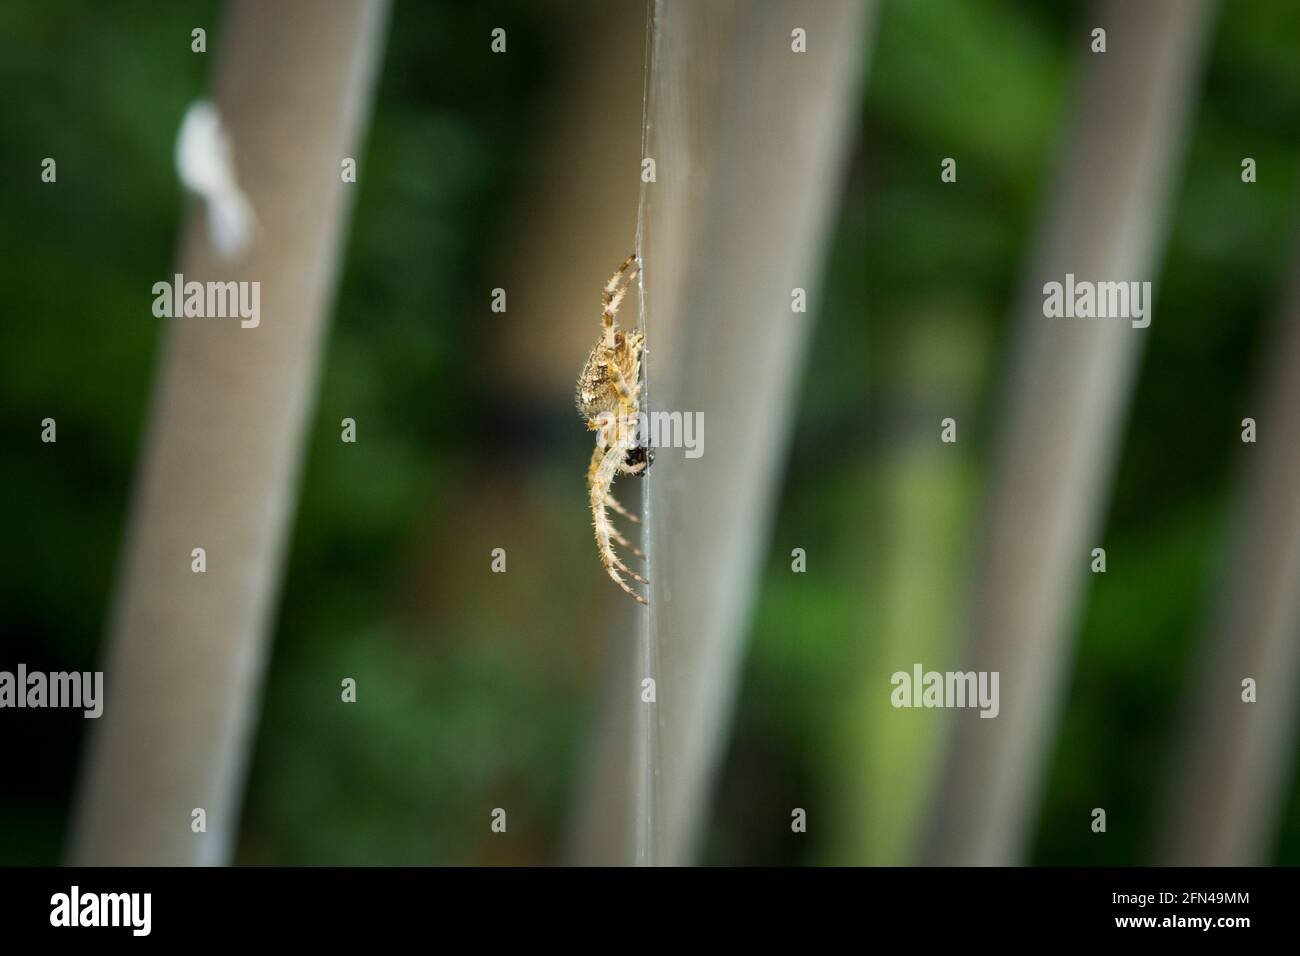 Grosse araignée jaune repose sur sa toile. Profil d'une grosse araignée poilue dangereuse en attente de proie. Gros plan des invertébrés dans le jardin. Banque D'Images